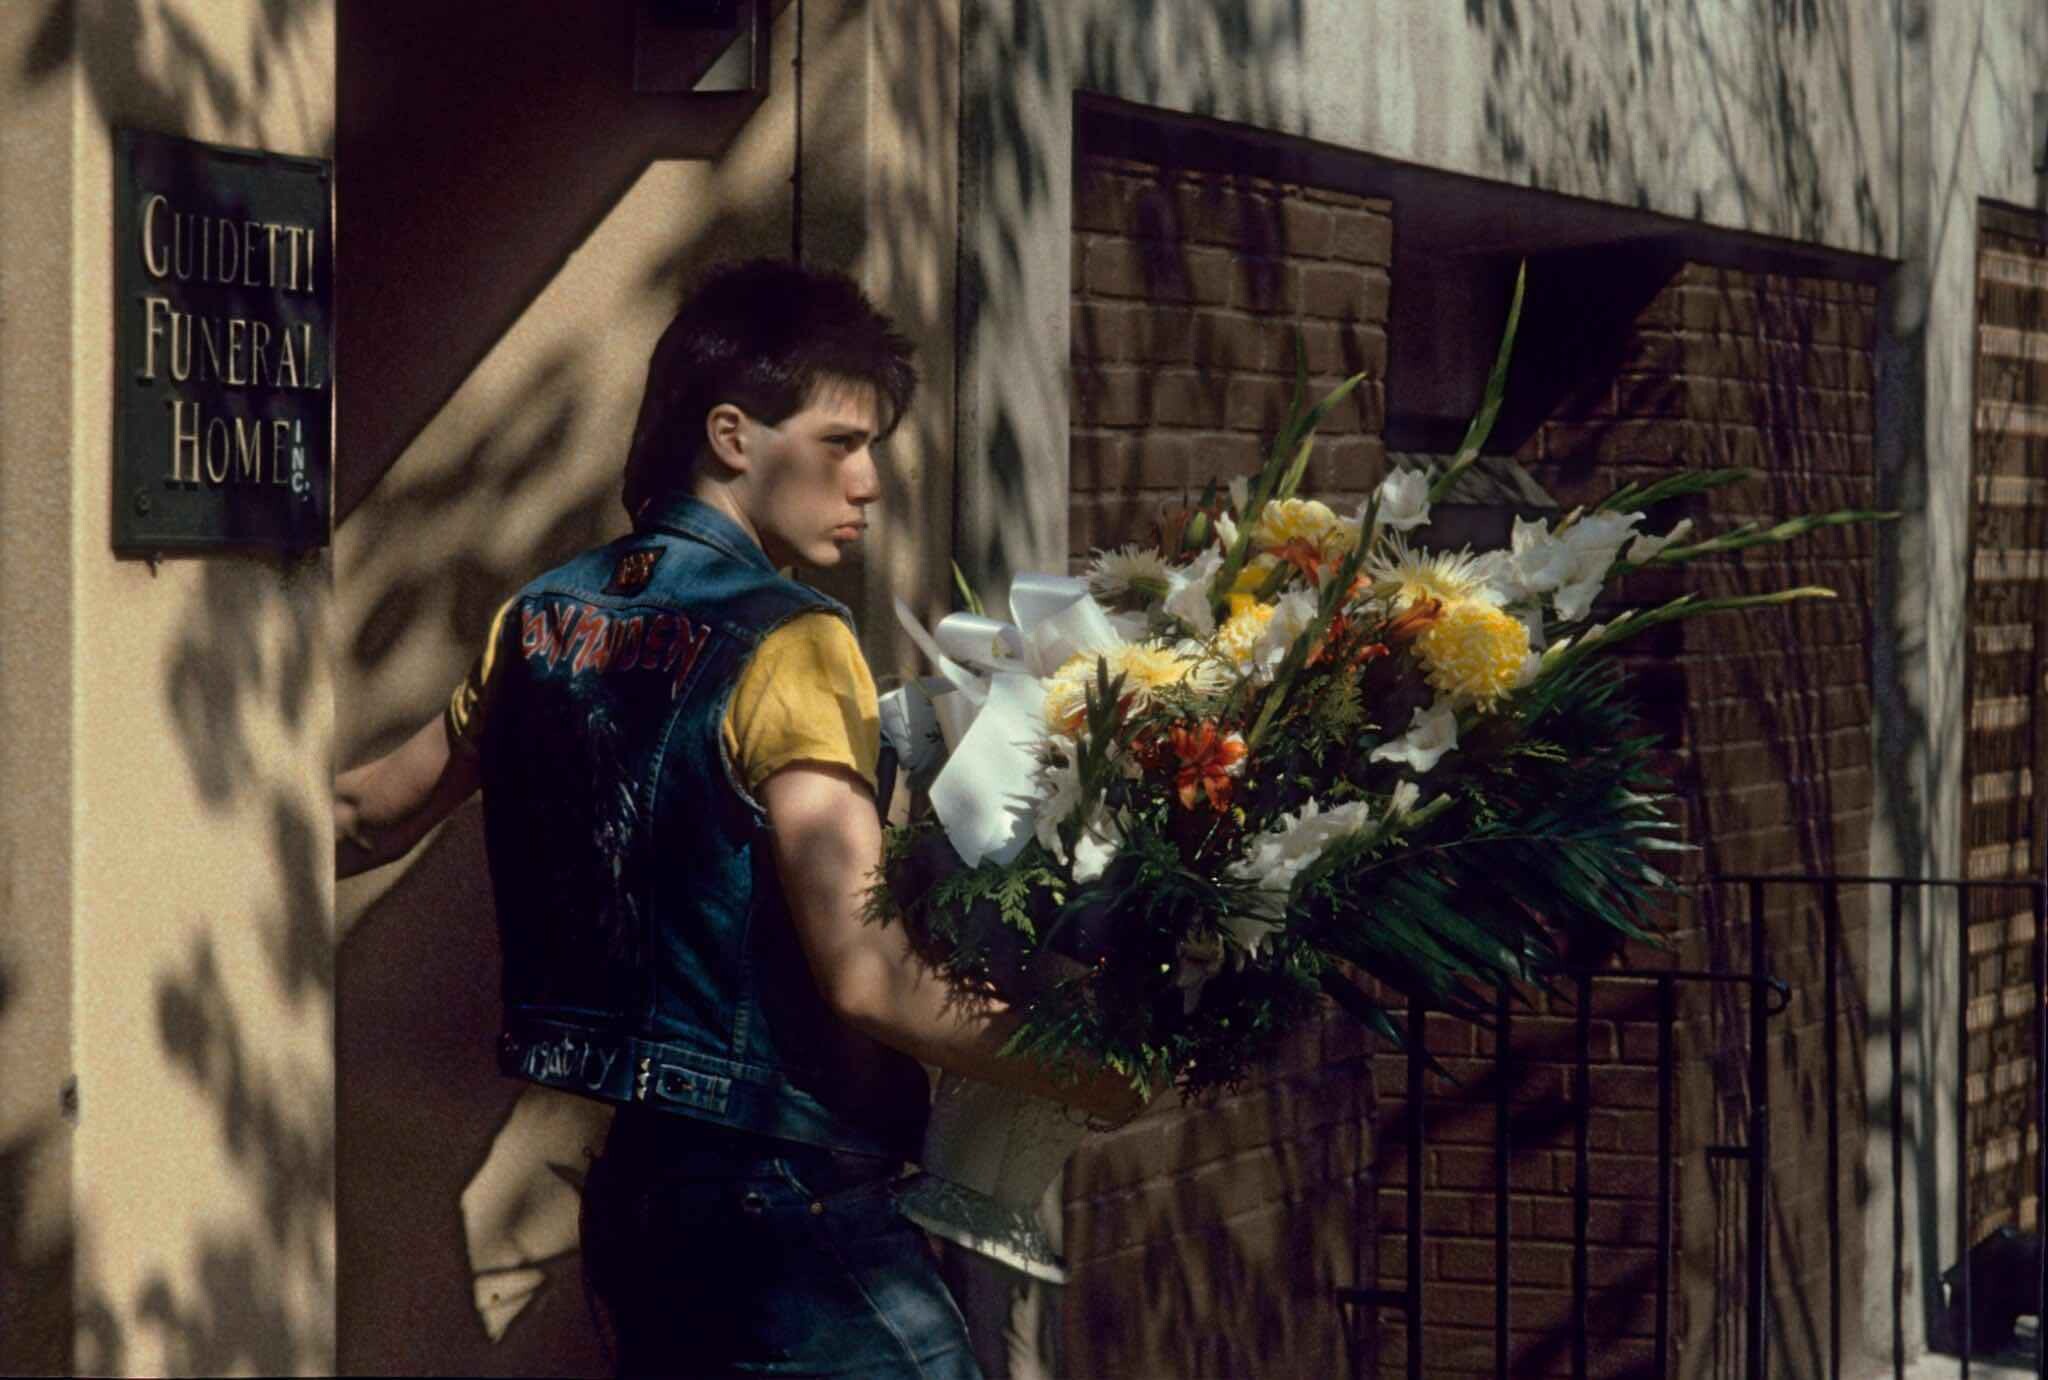 1985, Нью-Йорк, курьер из похоронного бюро. Фотограф Франк Хорват